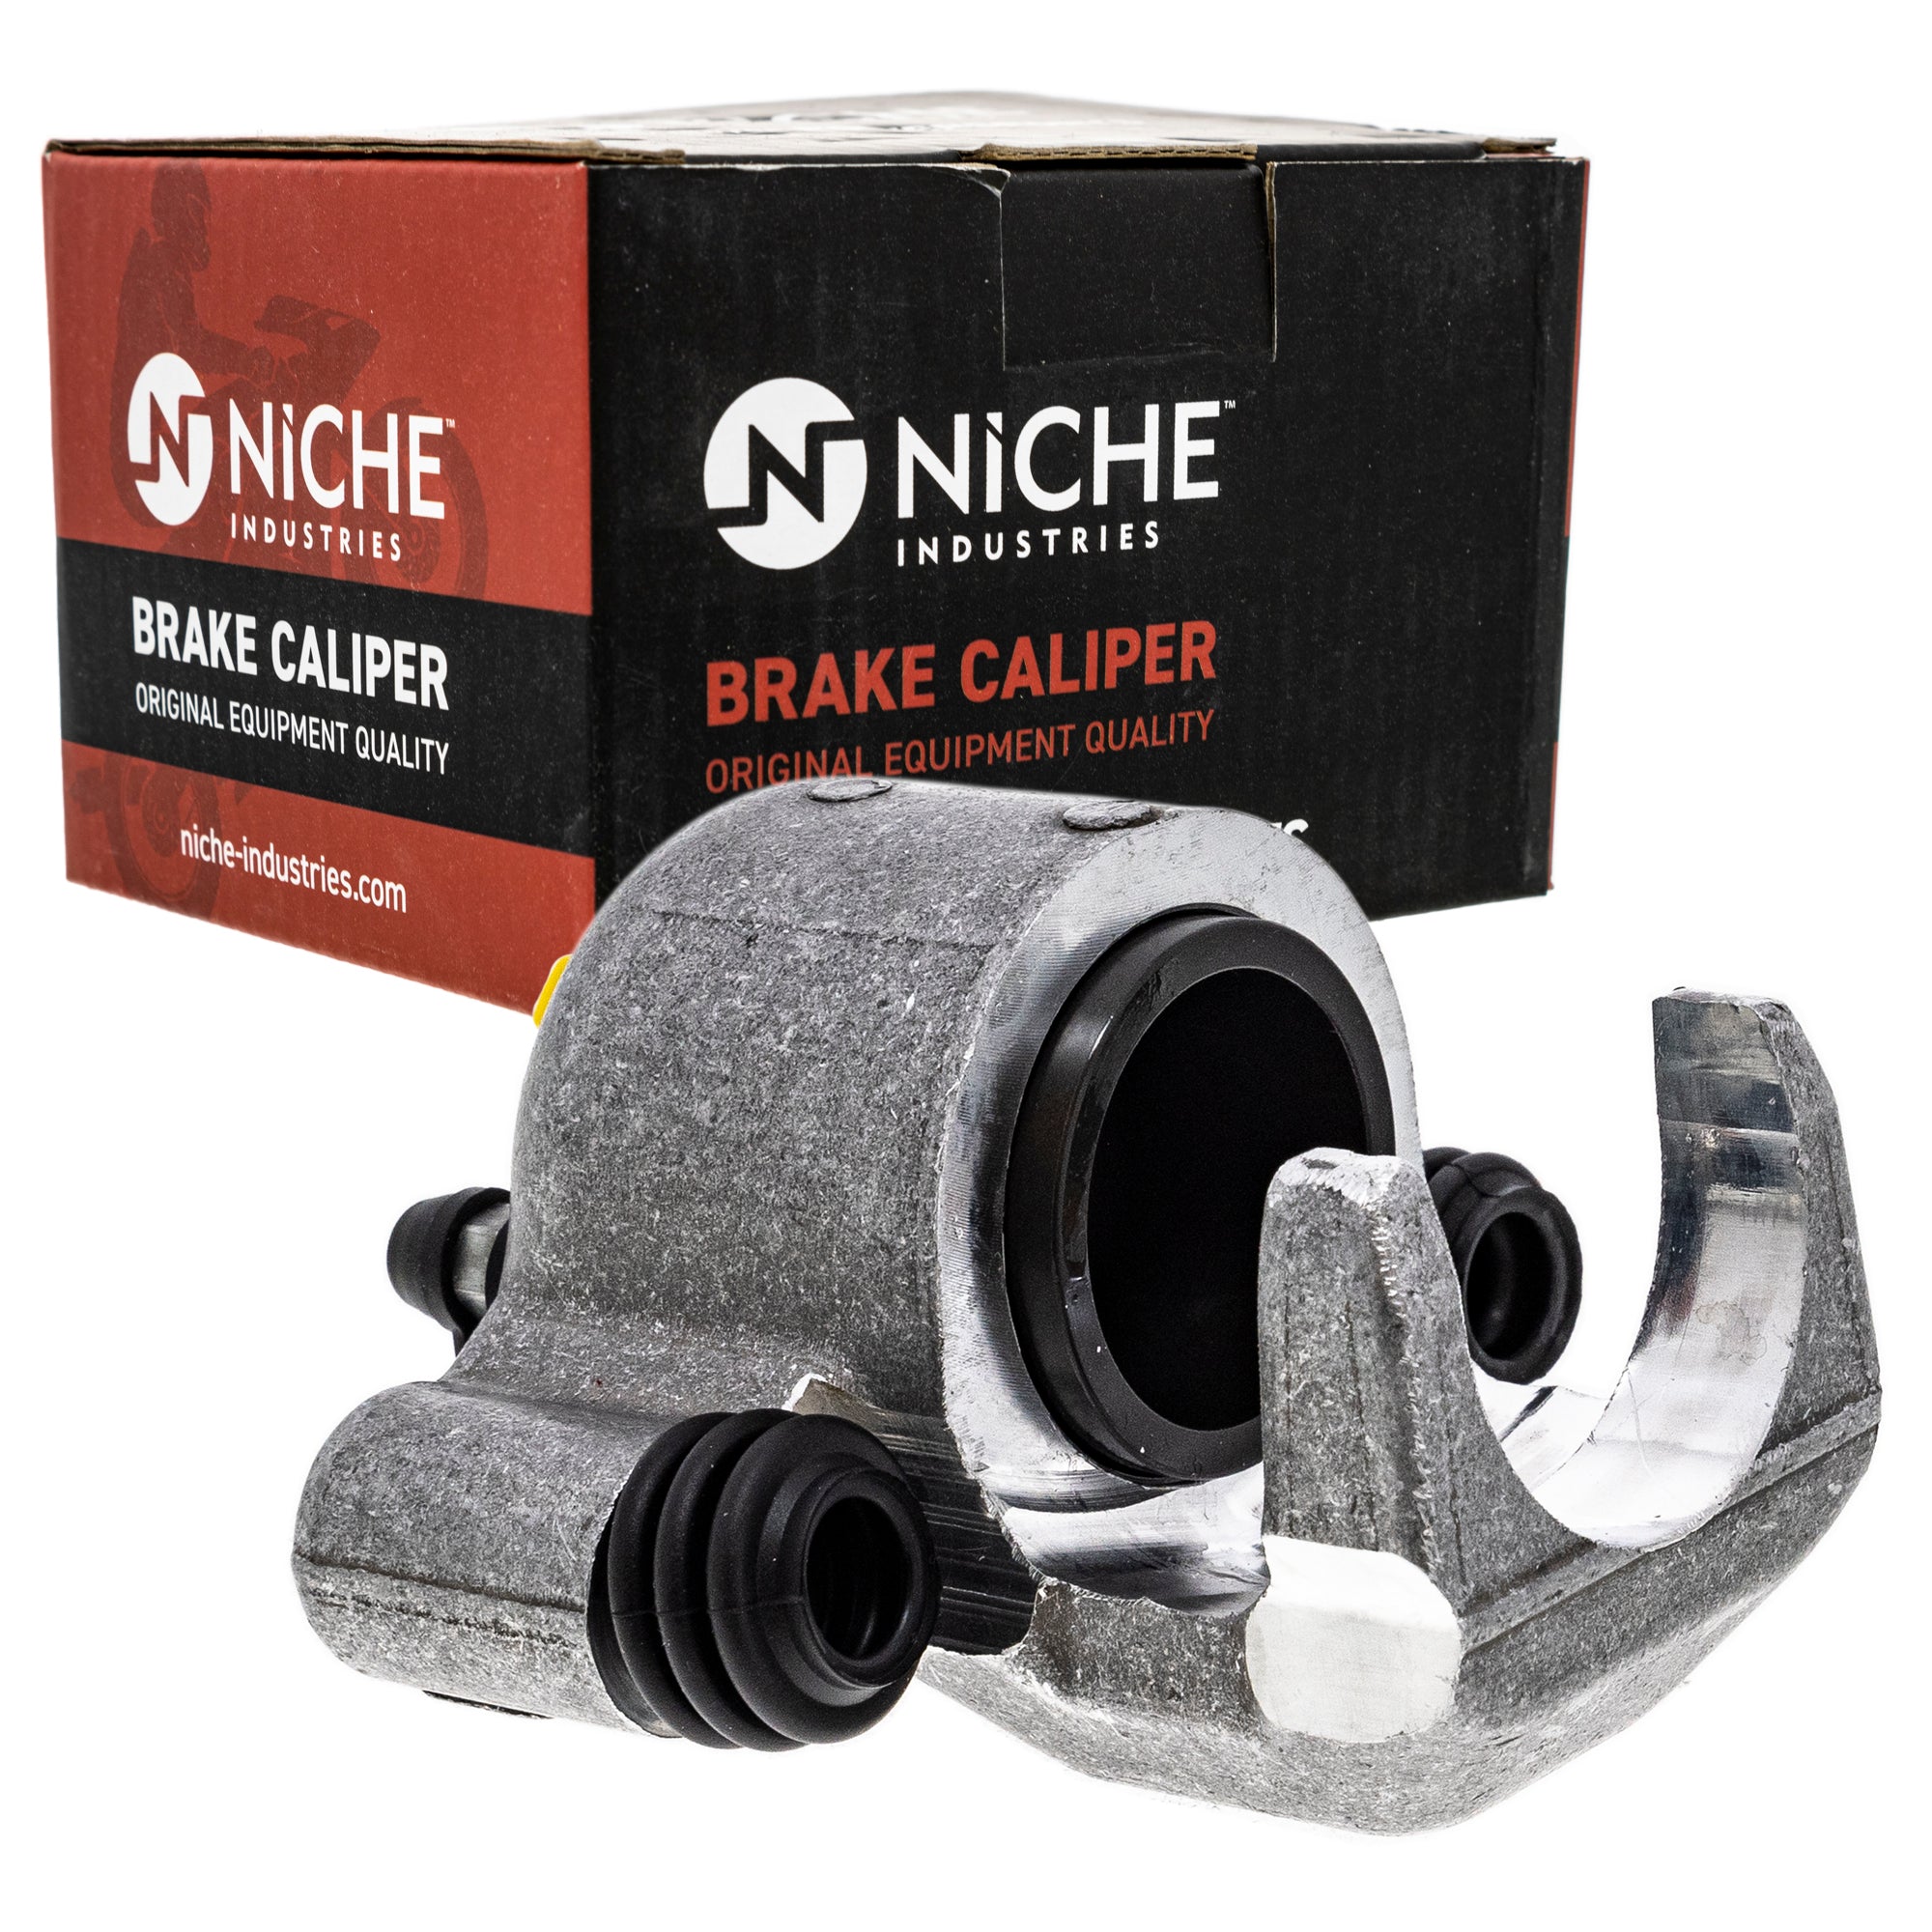 NICHE MK1001268 Brake Caliper Kit